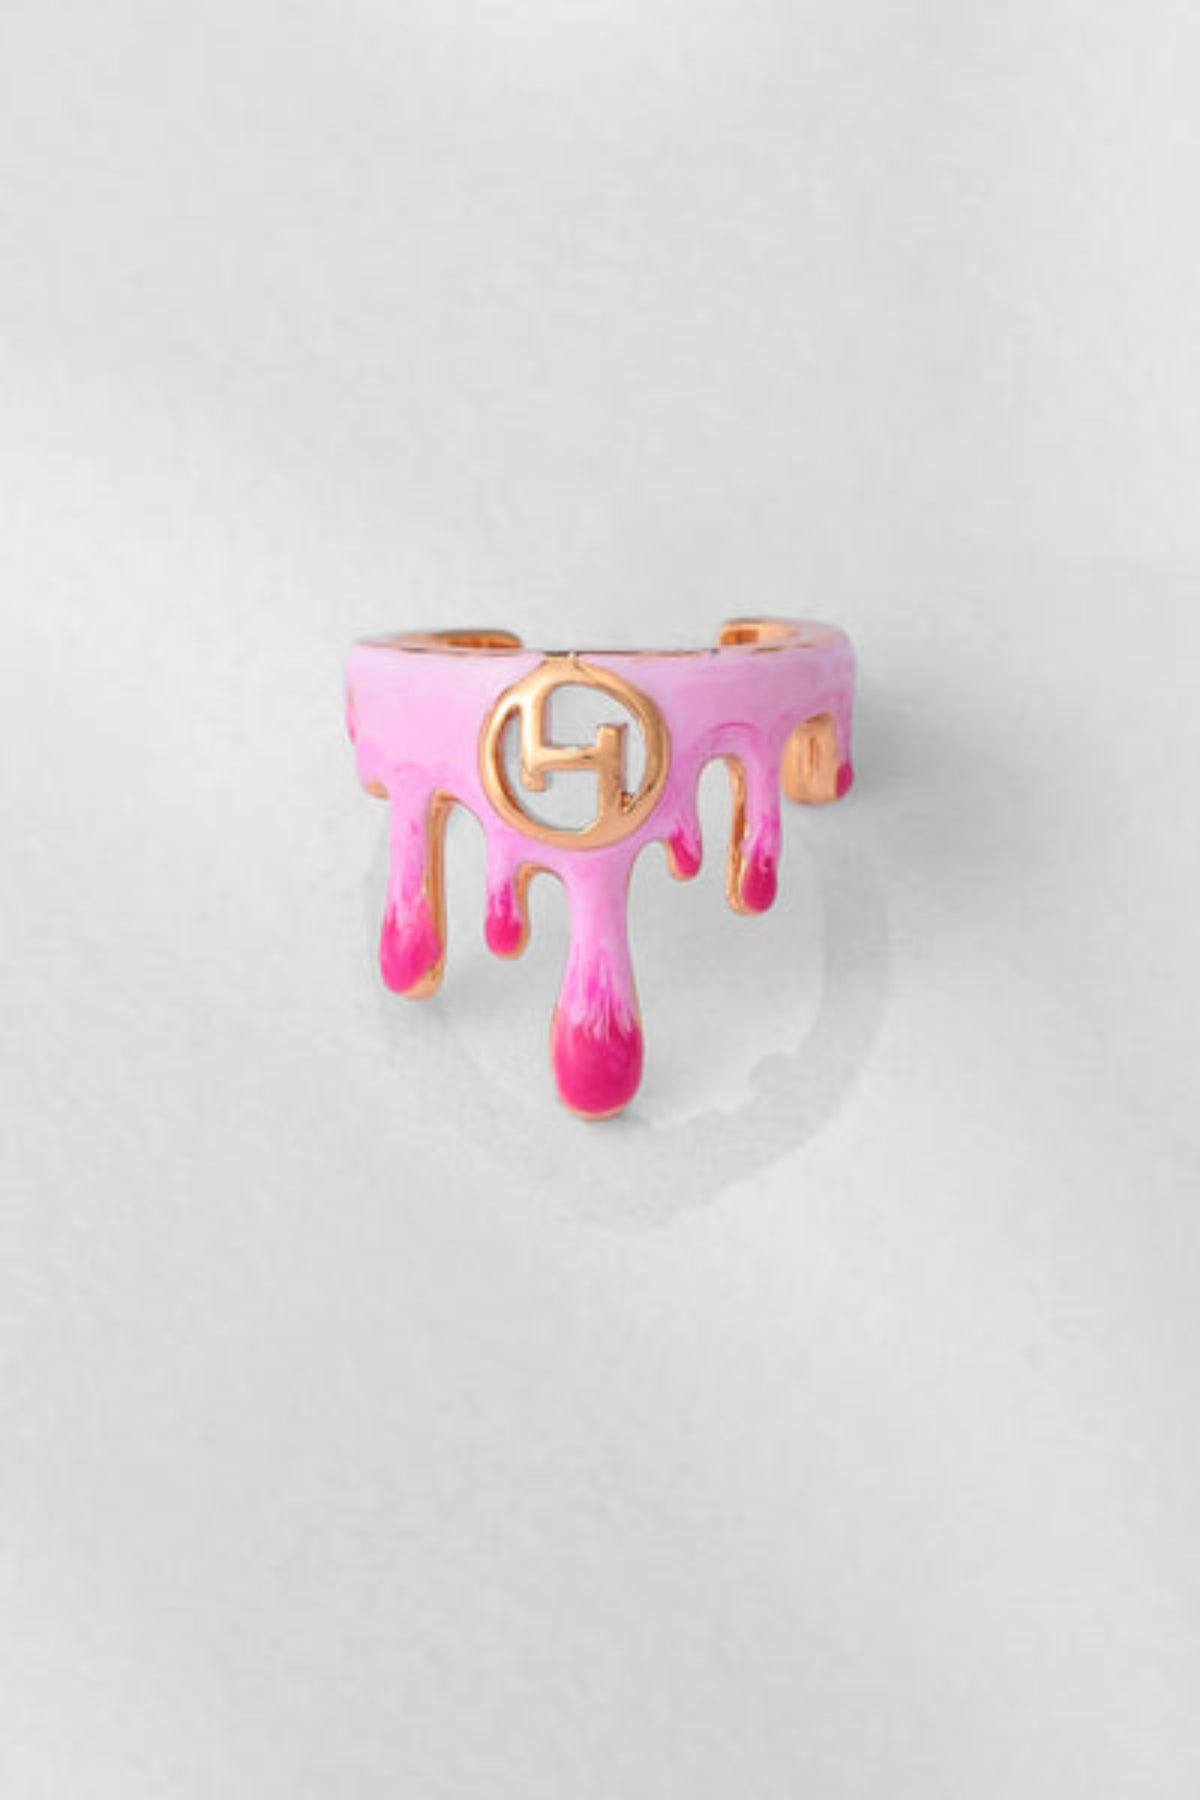 Midi Ring in Bubblegum Pink